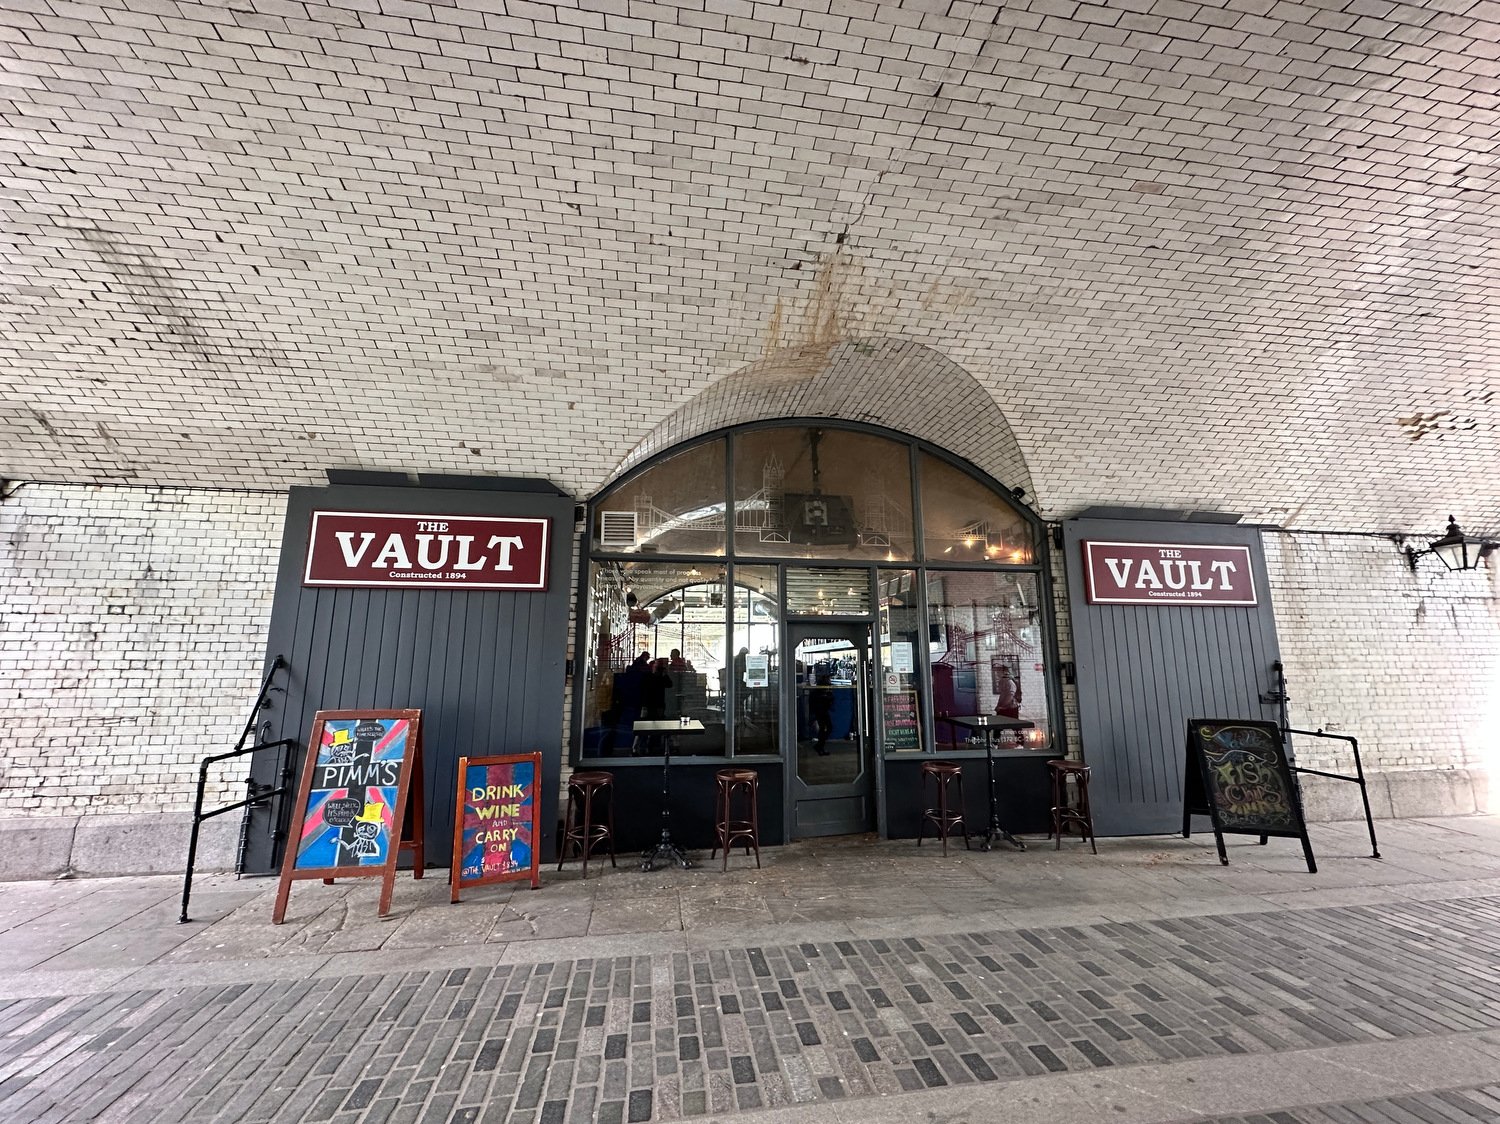 THe Vault restaurant under the Tower Bridge